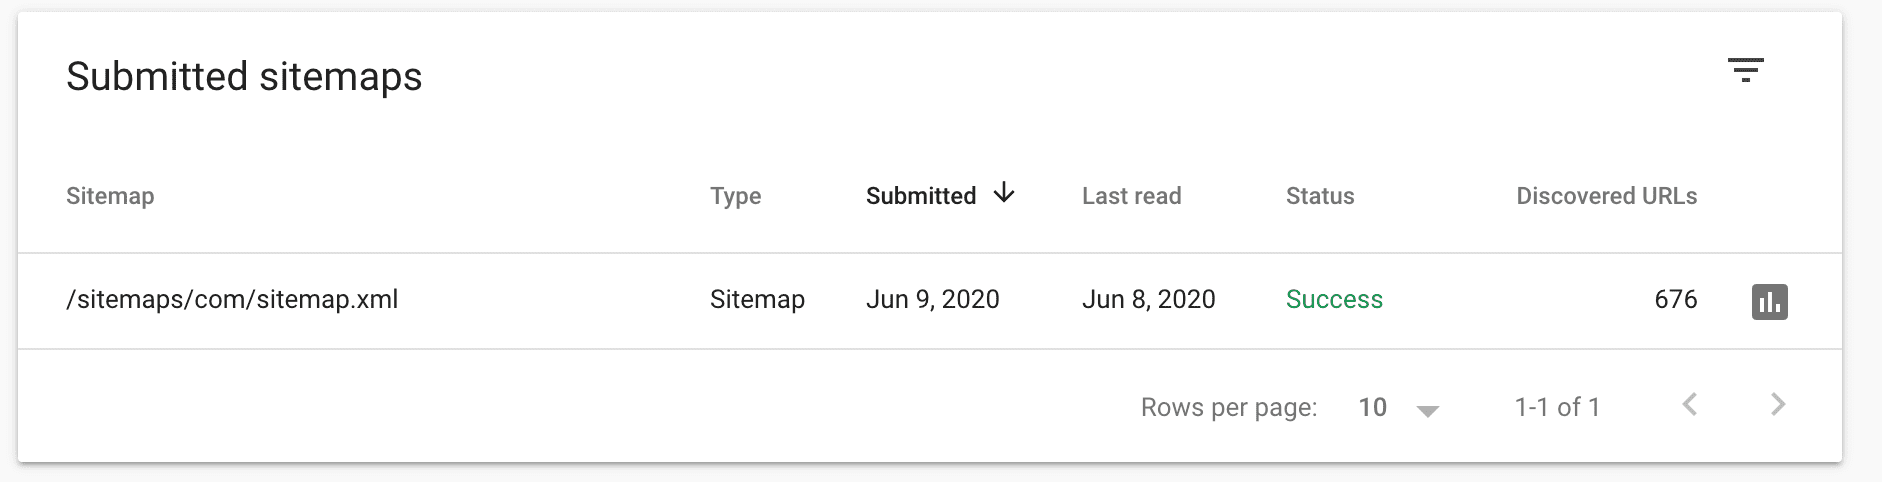 ثبت sitemap در گوگل